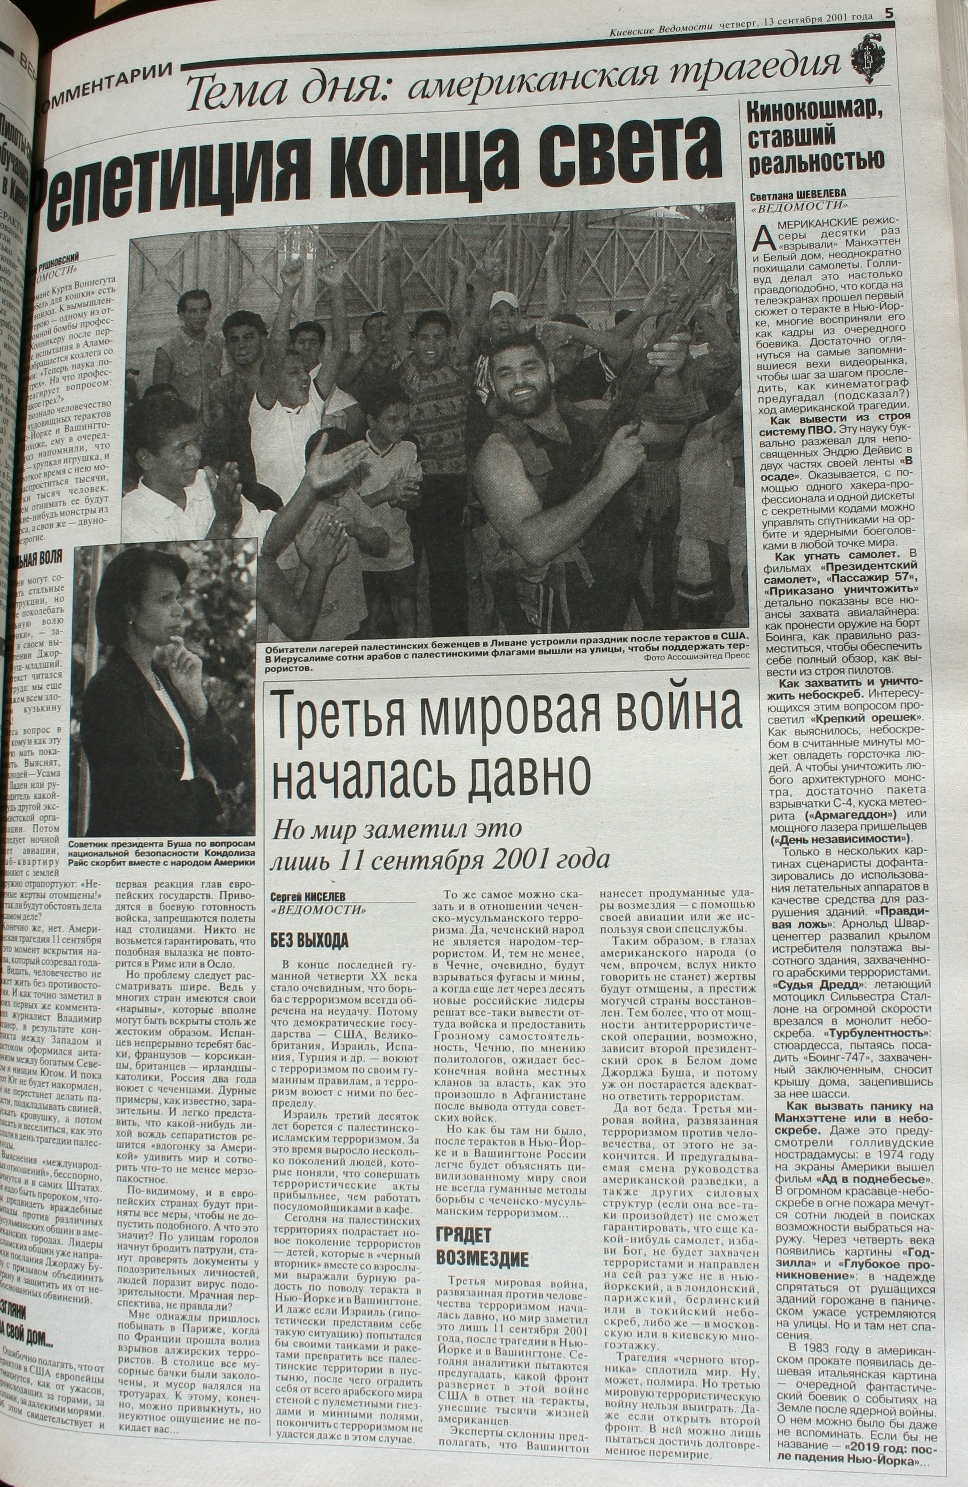 "Репетиція кінця світу": що писала українська преса про найжахливіший теракт століття - фото 11